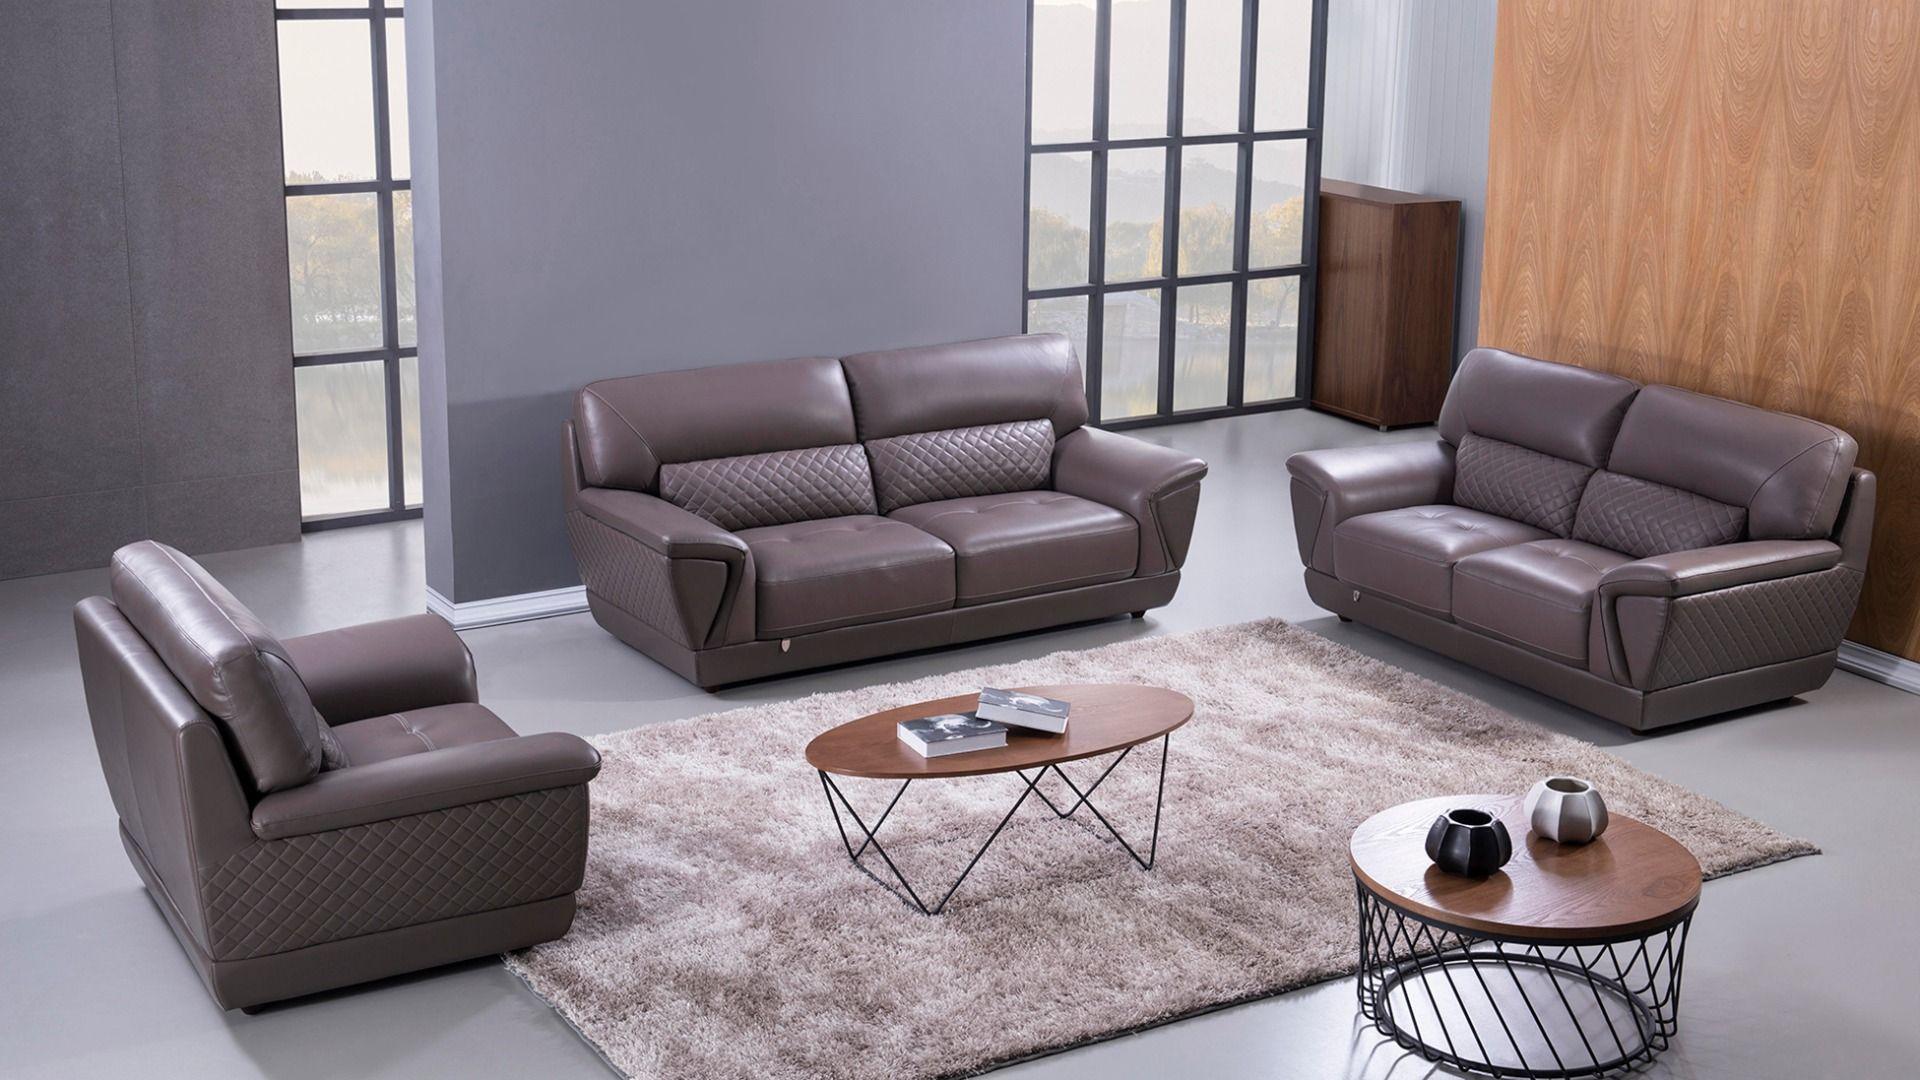 

    
American Eagle Furniture EK099-DT-SF Sofa Dark Tan EK099-DT-SF
